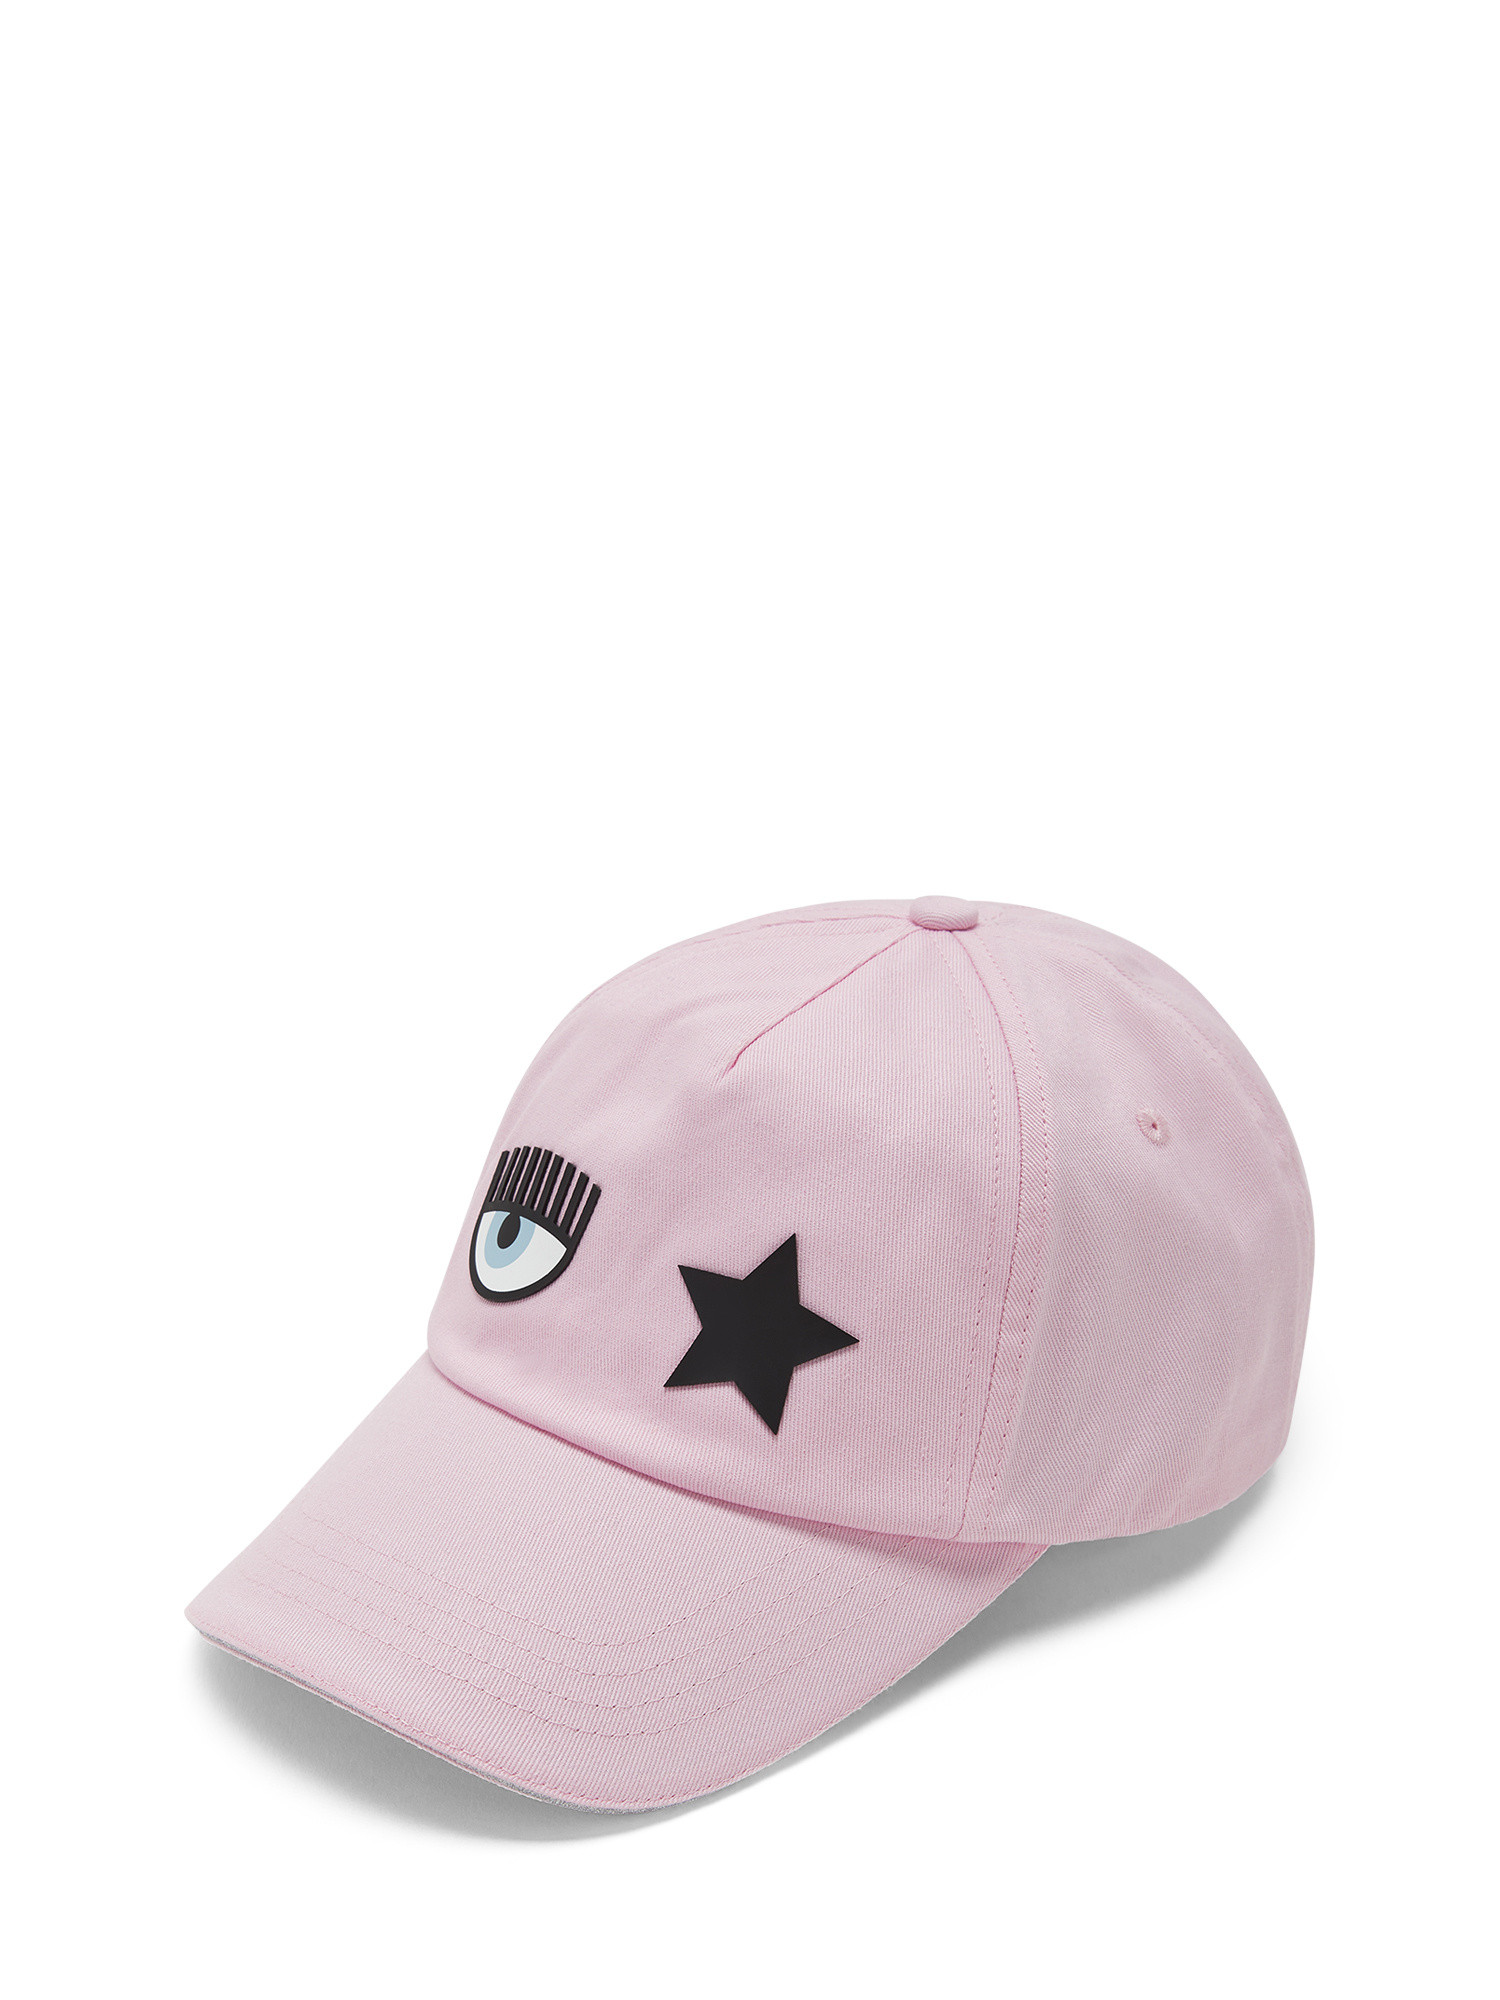 Chiara Ferragni - Eye Star baseball hat, Pink, large image number 0